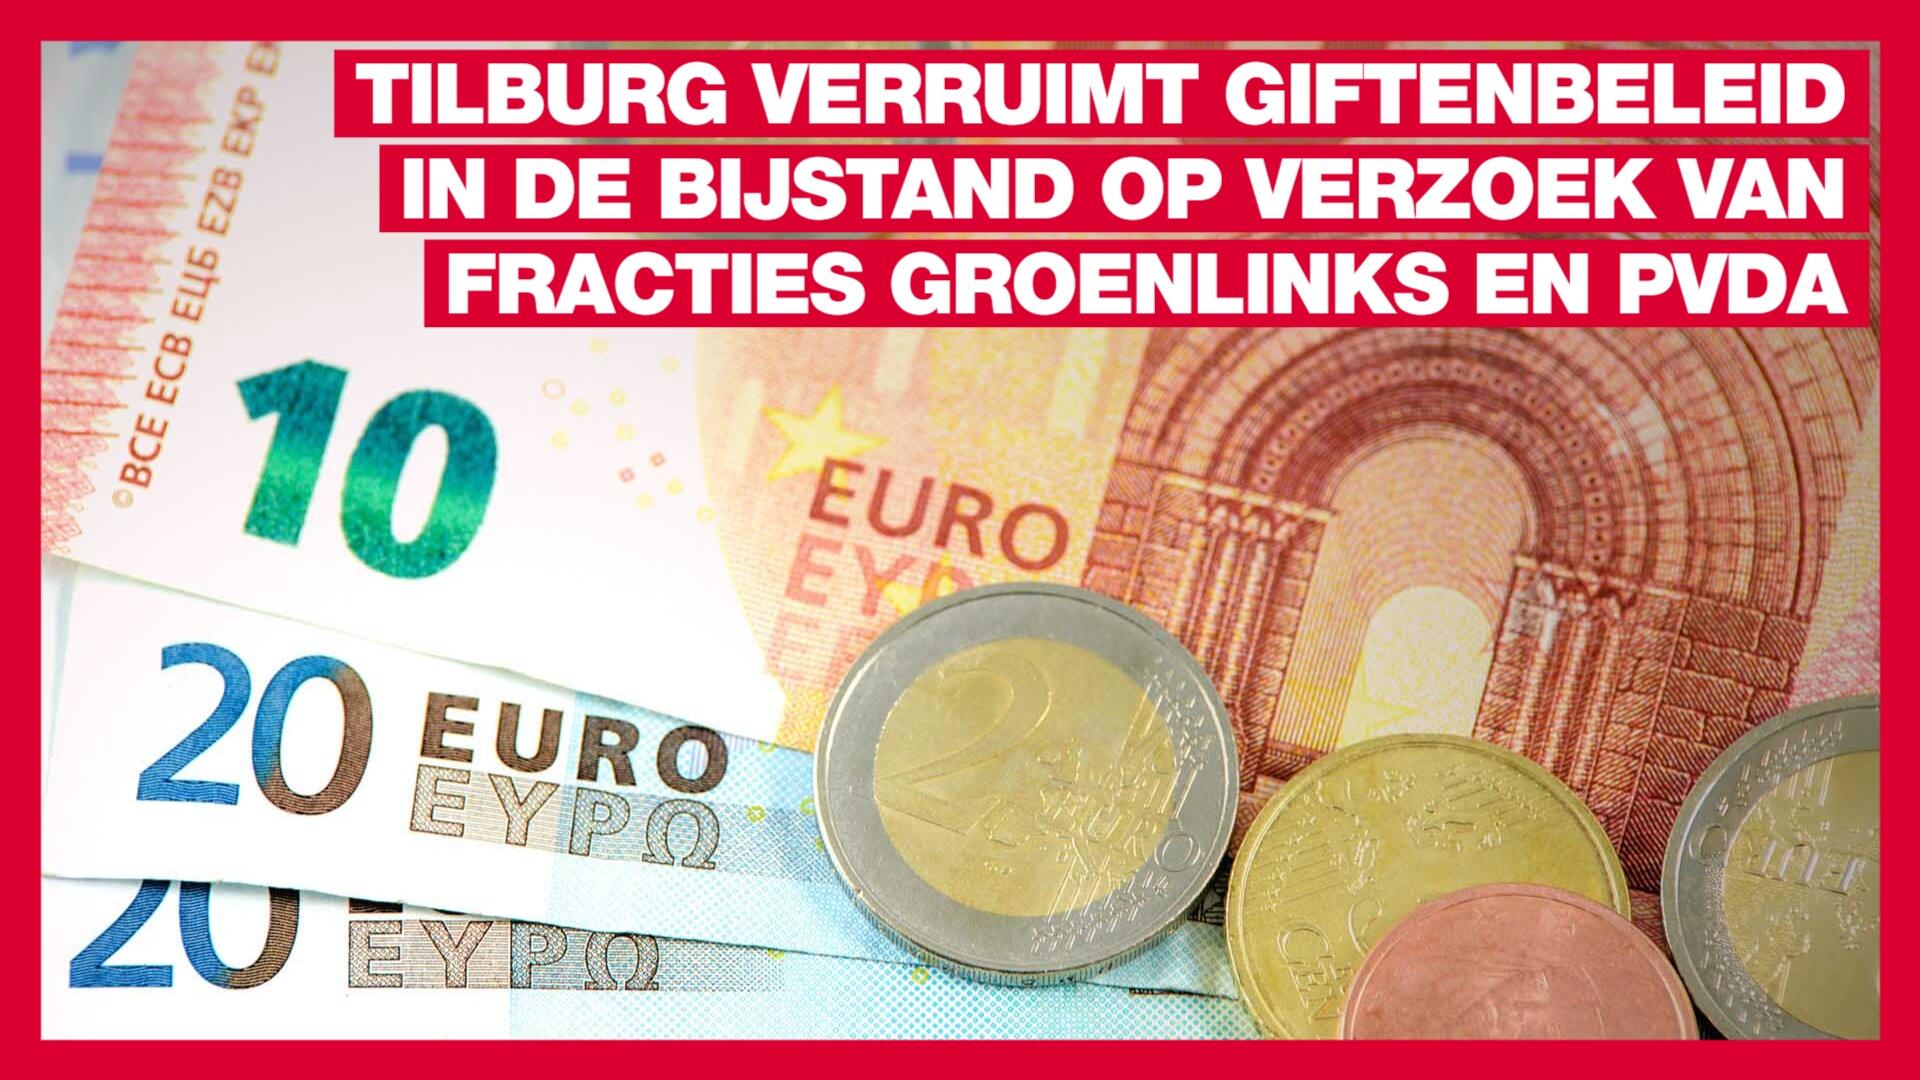 Tilburg verruimt giftenbeleid in de bijstand op verzoek van fracties GroenLinks en PvdA